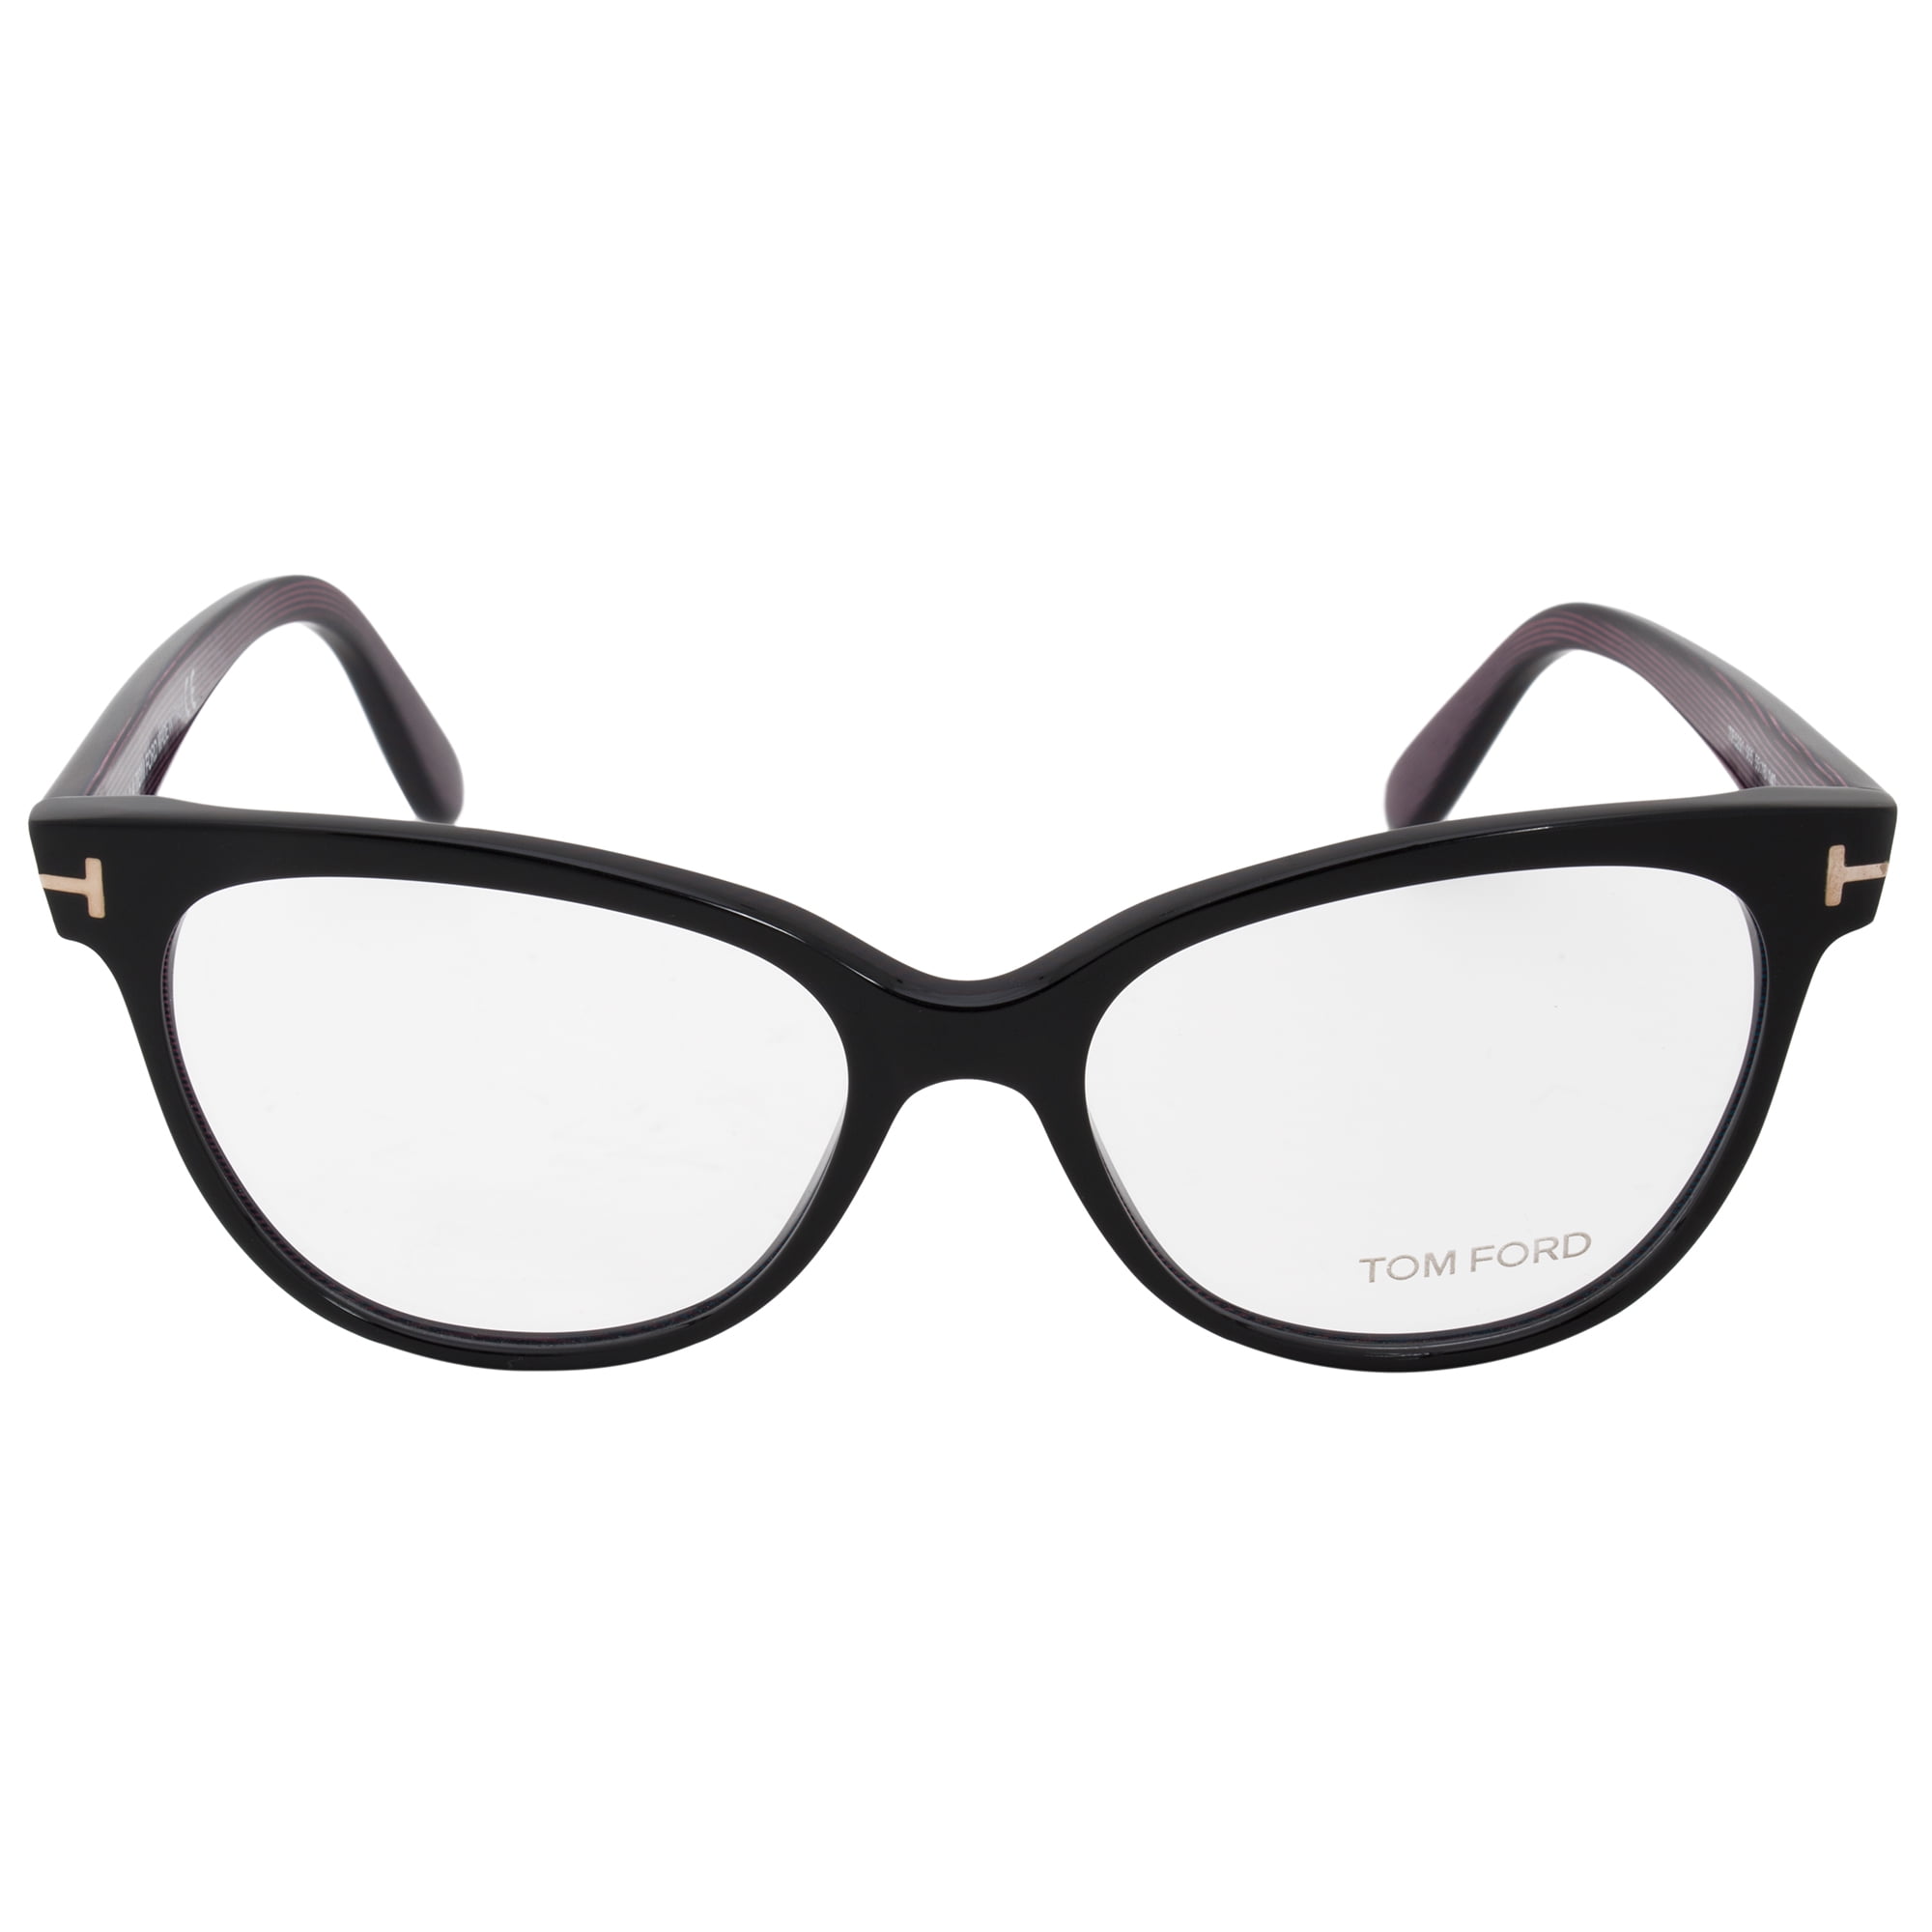 Tom Ford FT5291 5 Cat Eye | Black| Eyeglass Frames 